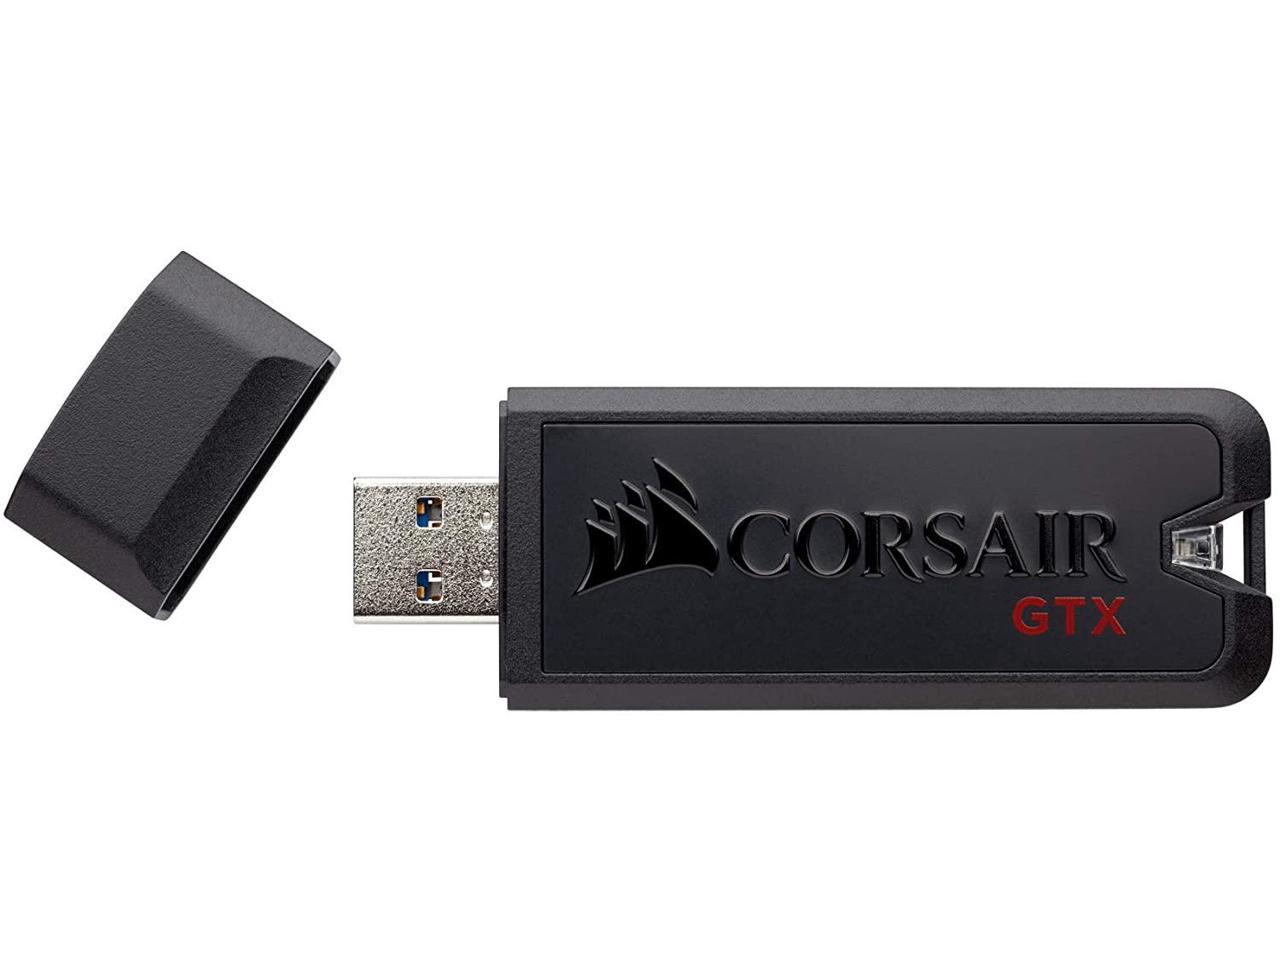 CORSAIR Voyager GTX 256GB USB 3.1 Premium Flash Drive - Newegg.com